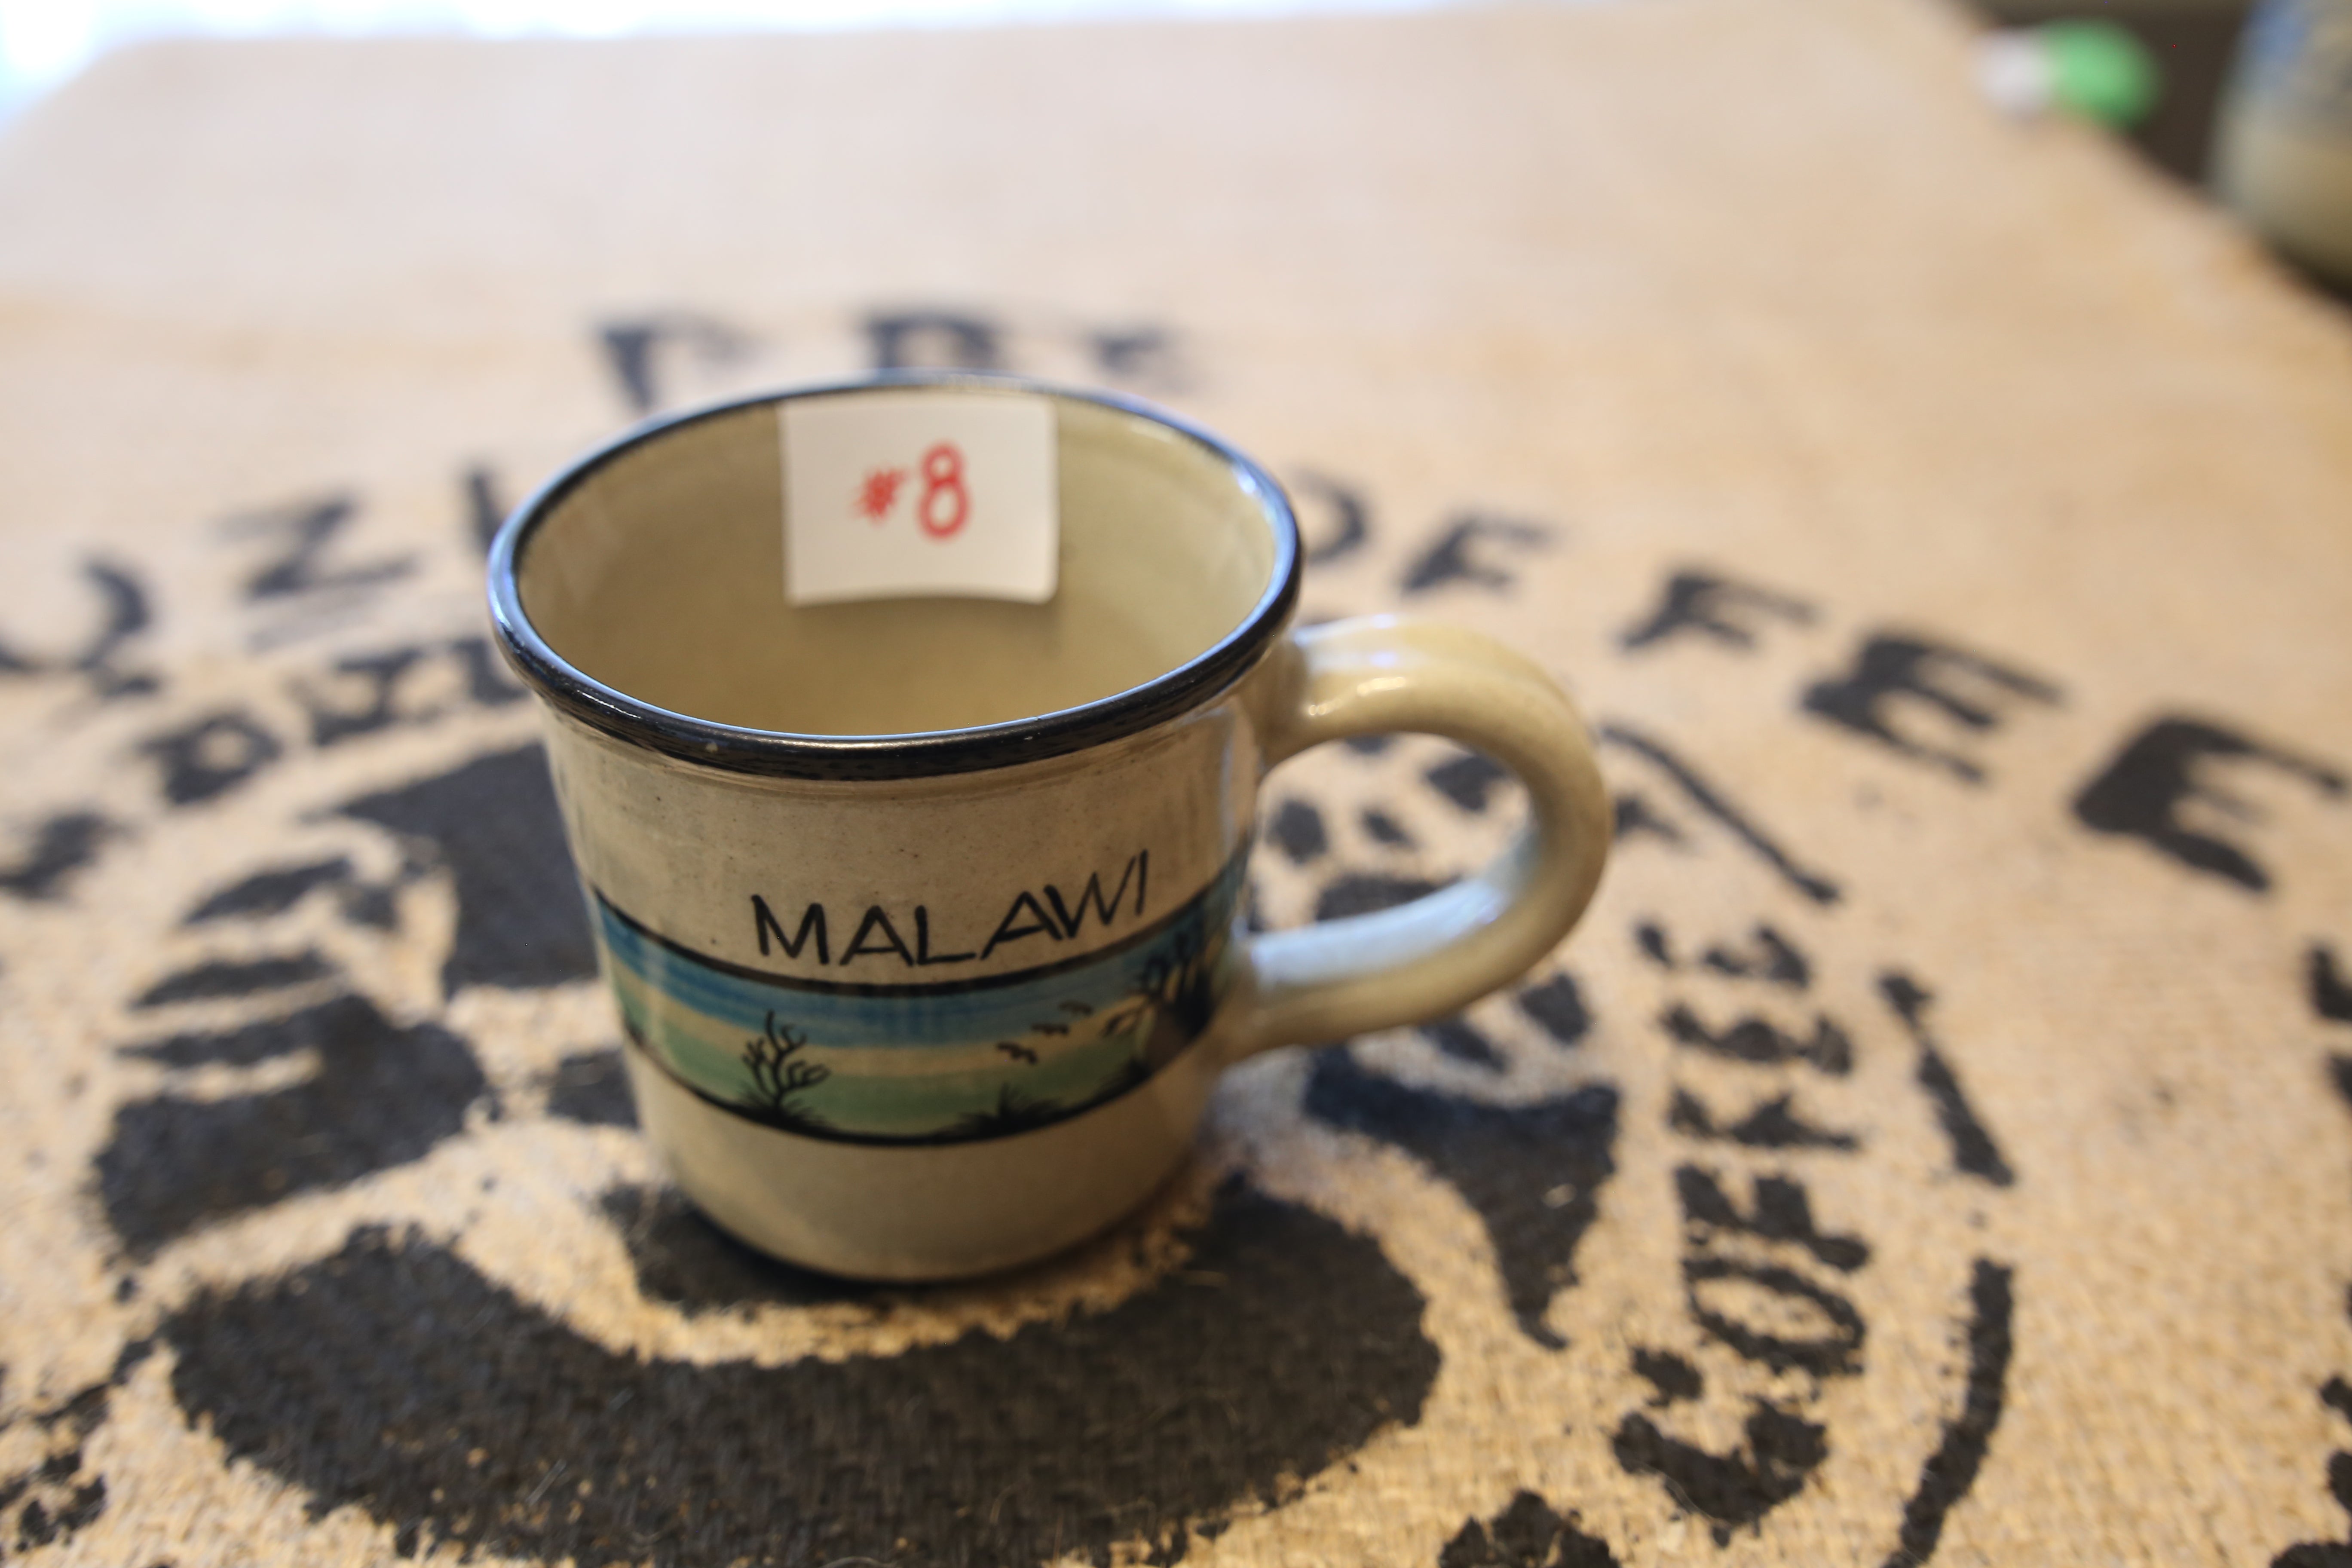 #8 Dedza mug "Malawi" with blue band painted scene